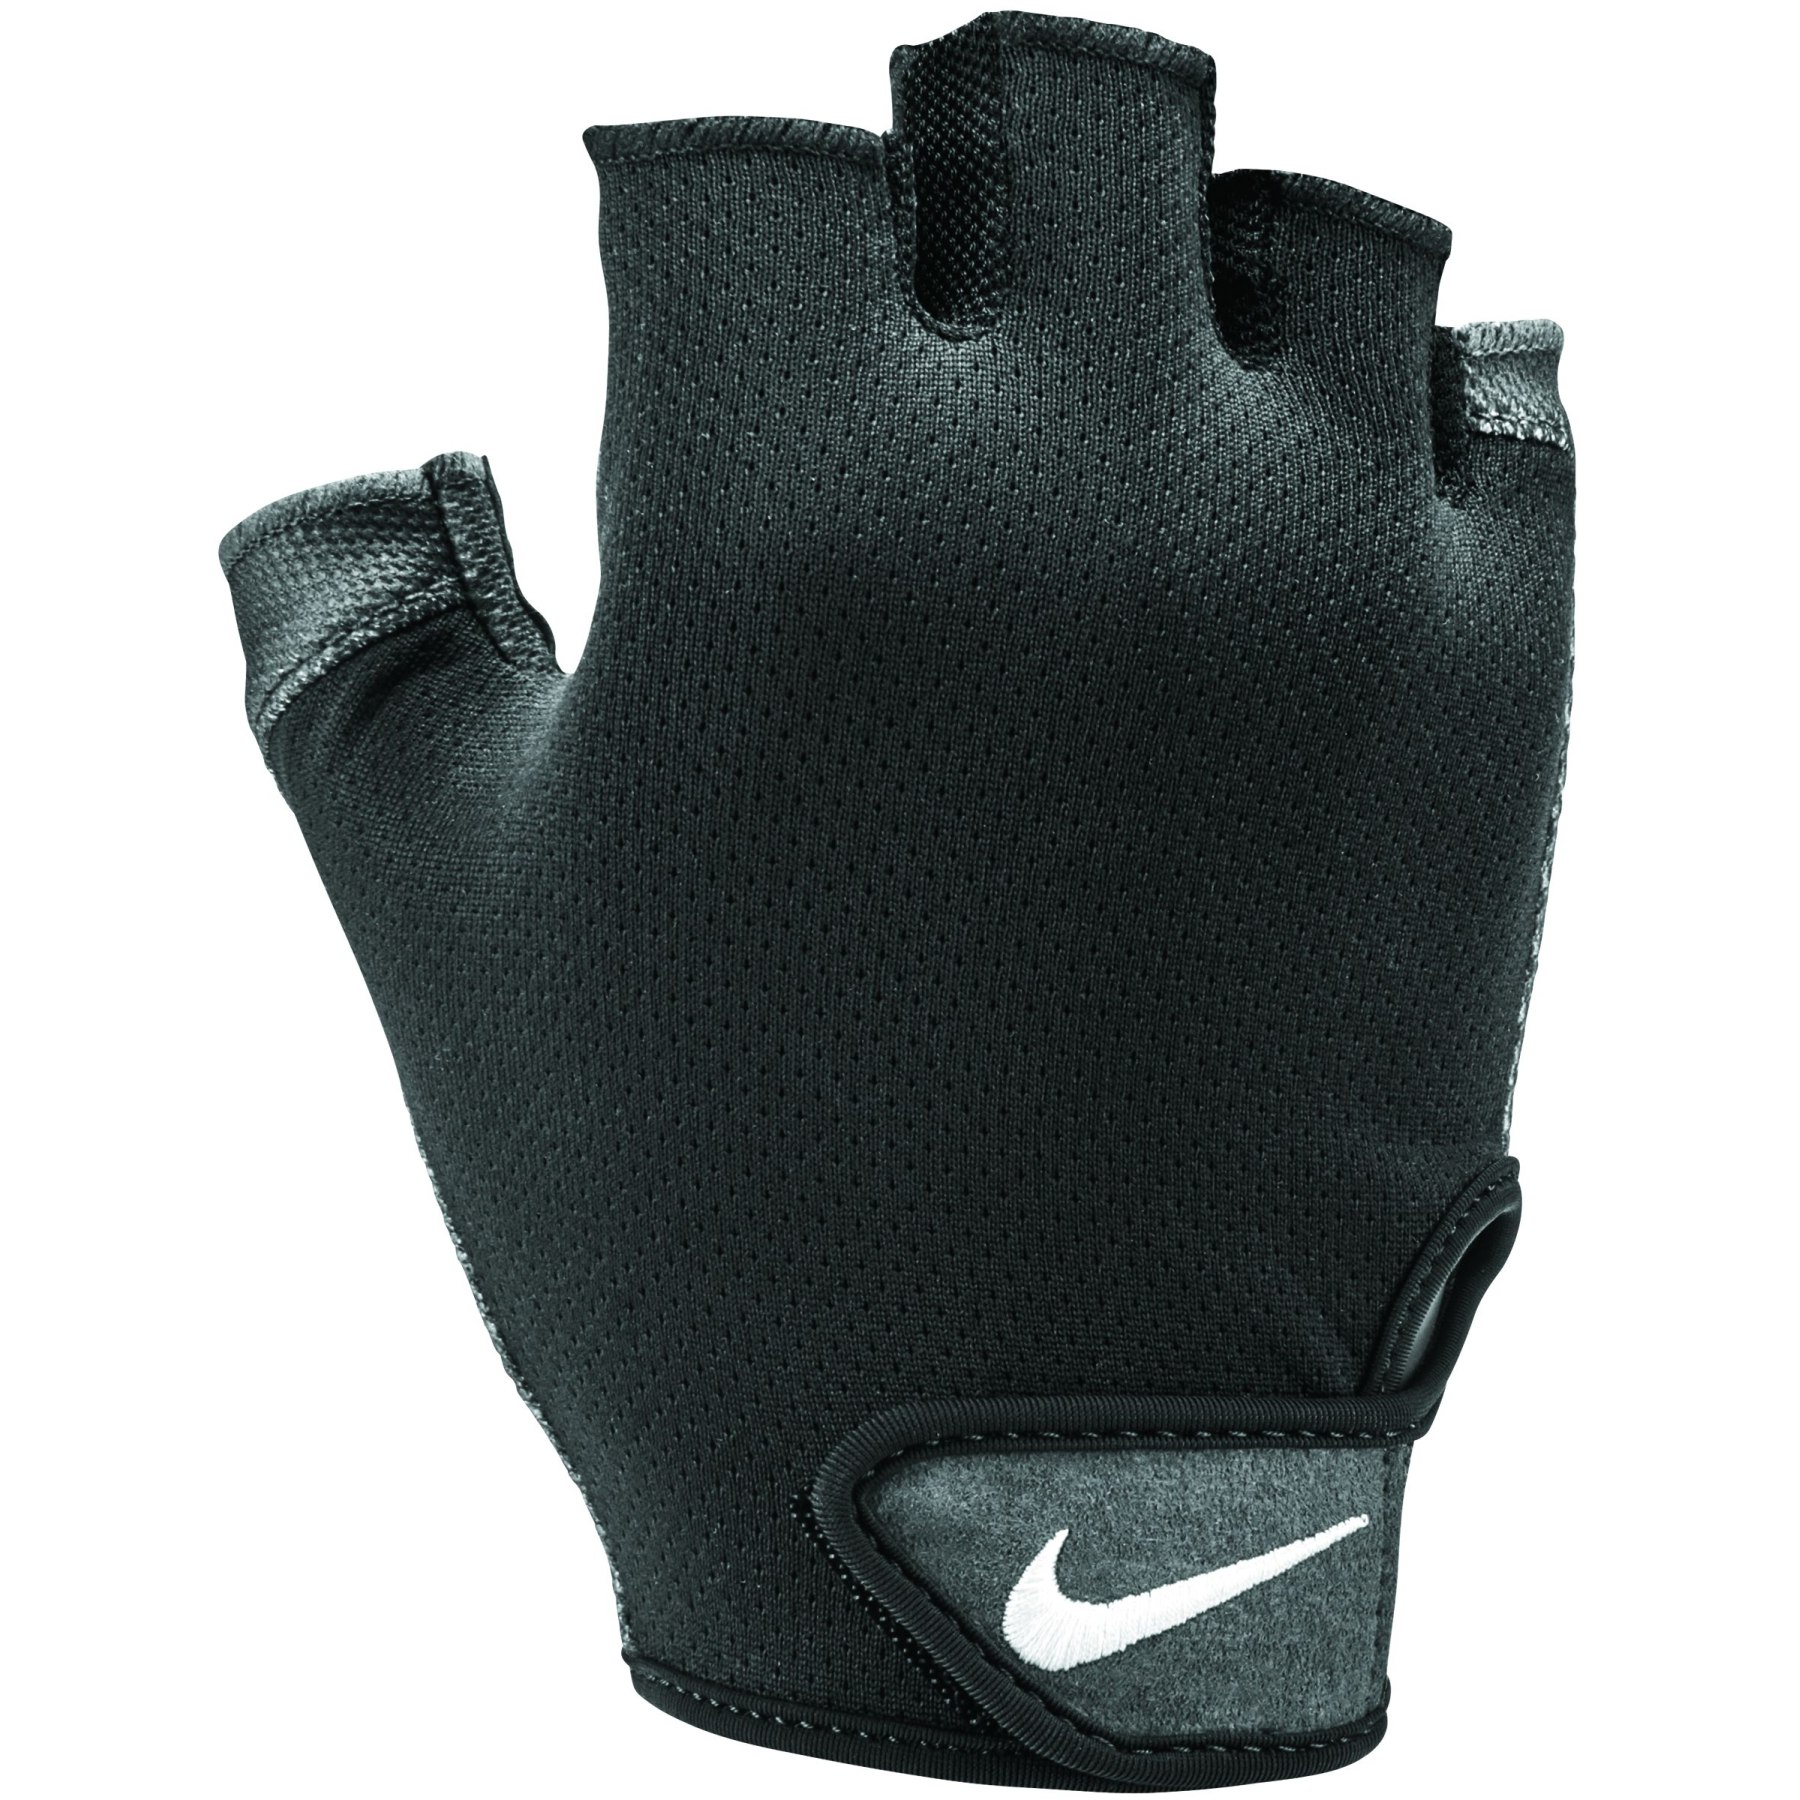 Produktbild von Nike Essential Fitness Herren Handschuhe - black/anthracite/white 057